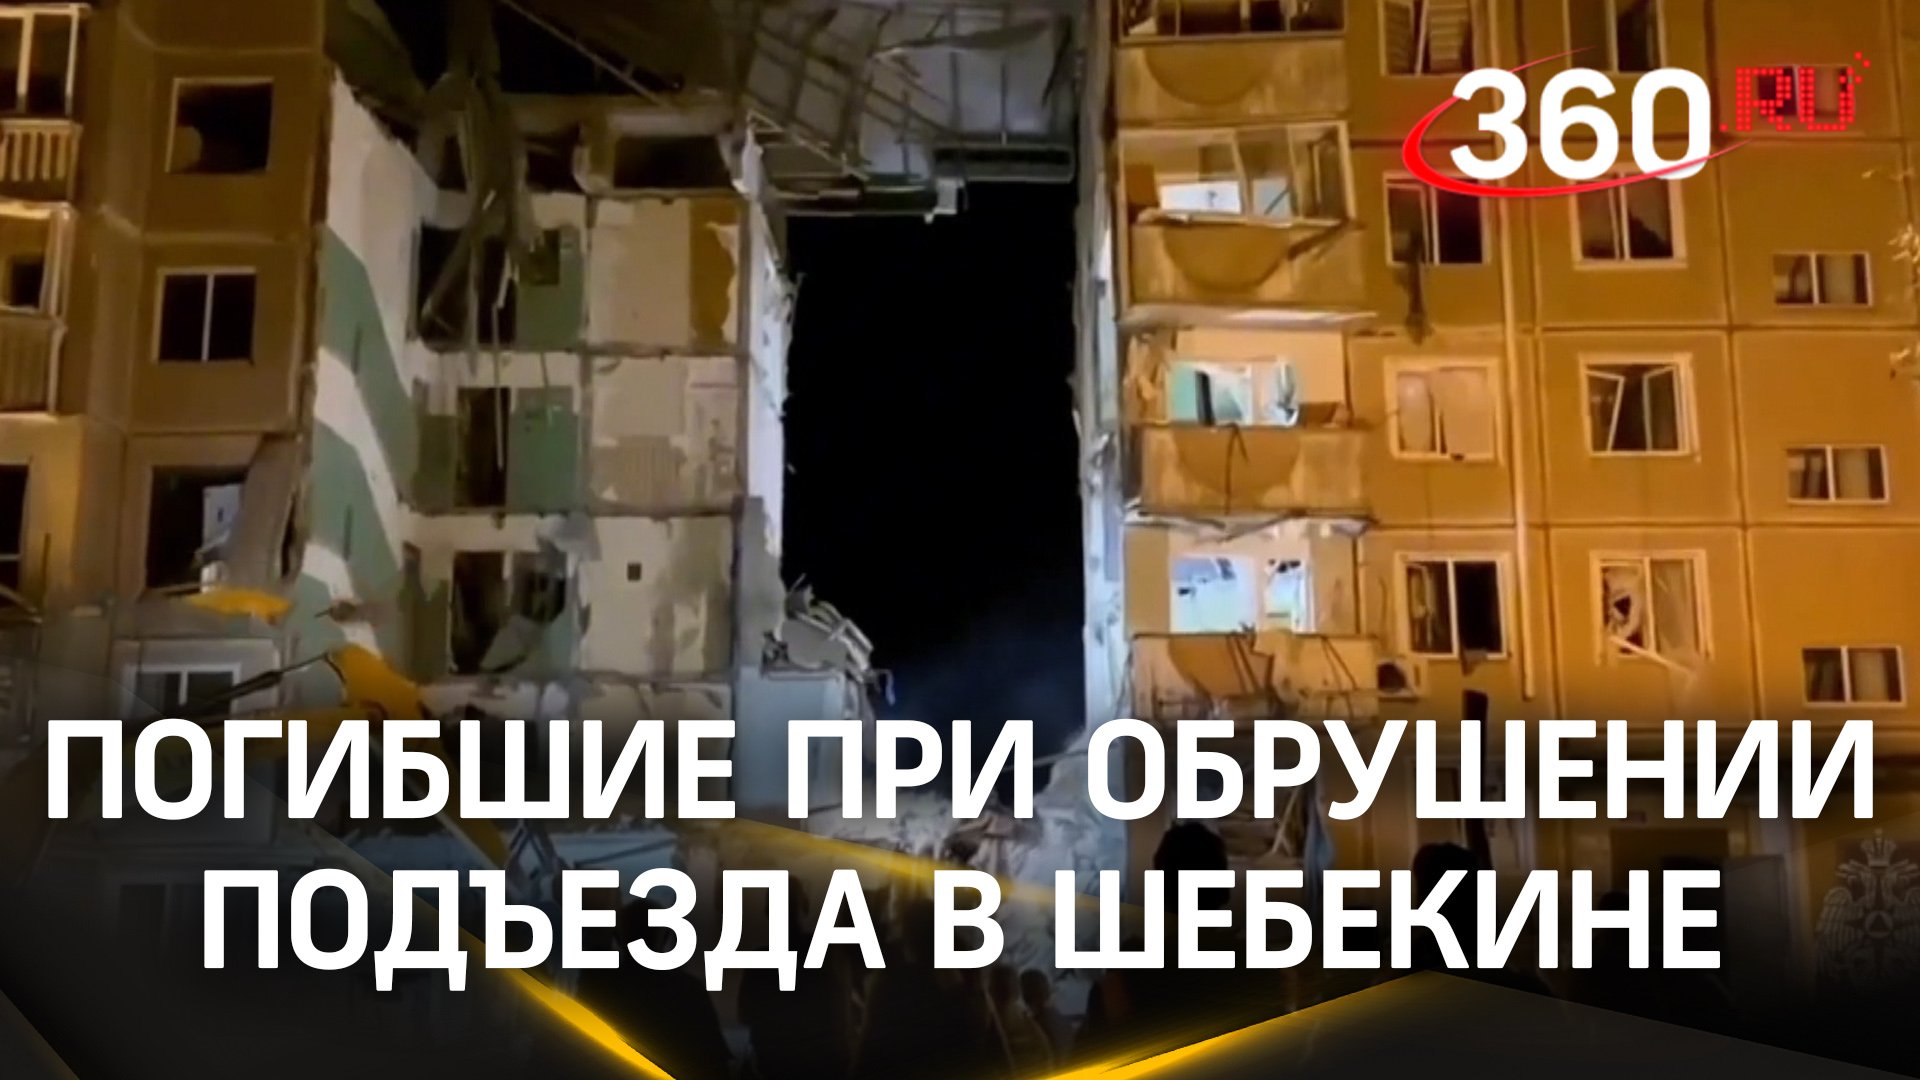 Пятеро погибших при обрушении подъезда в Шебекине после обстрела ВСУ — жильцов снимали с крыши дома